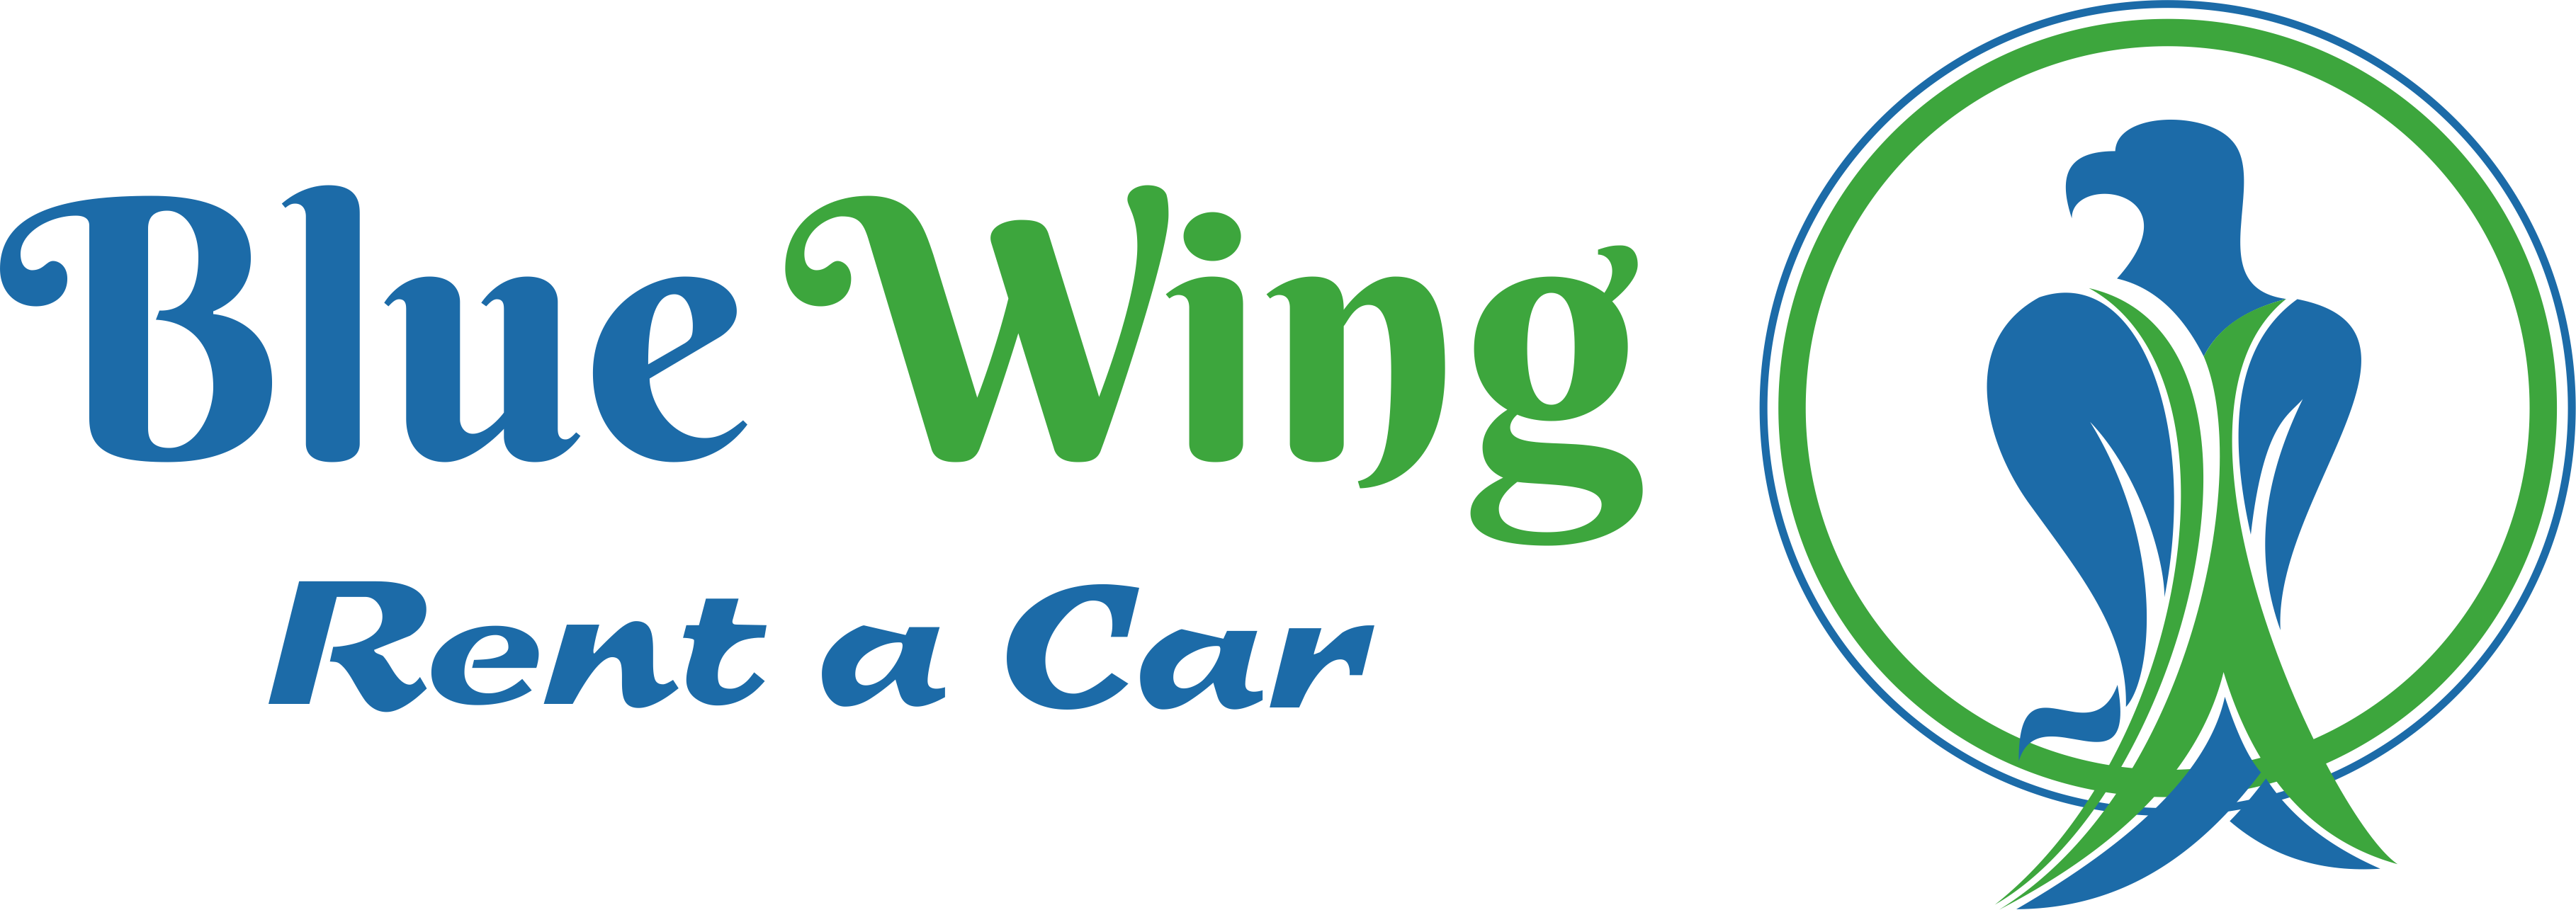 Blue Wing Rent A Car company